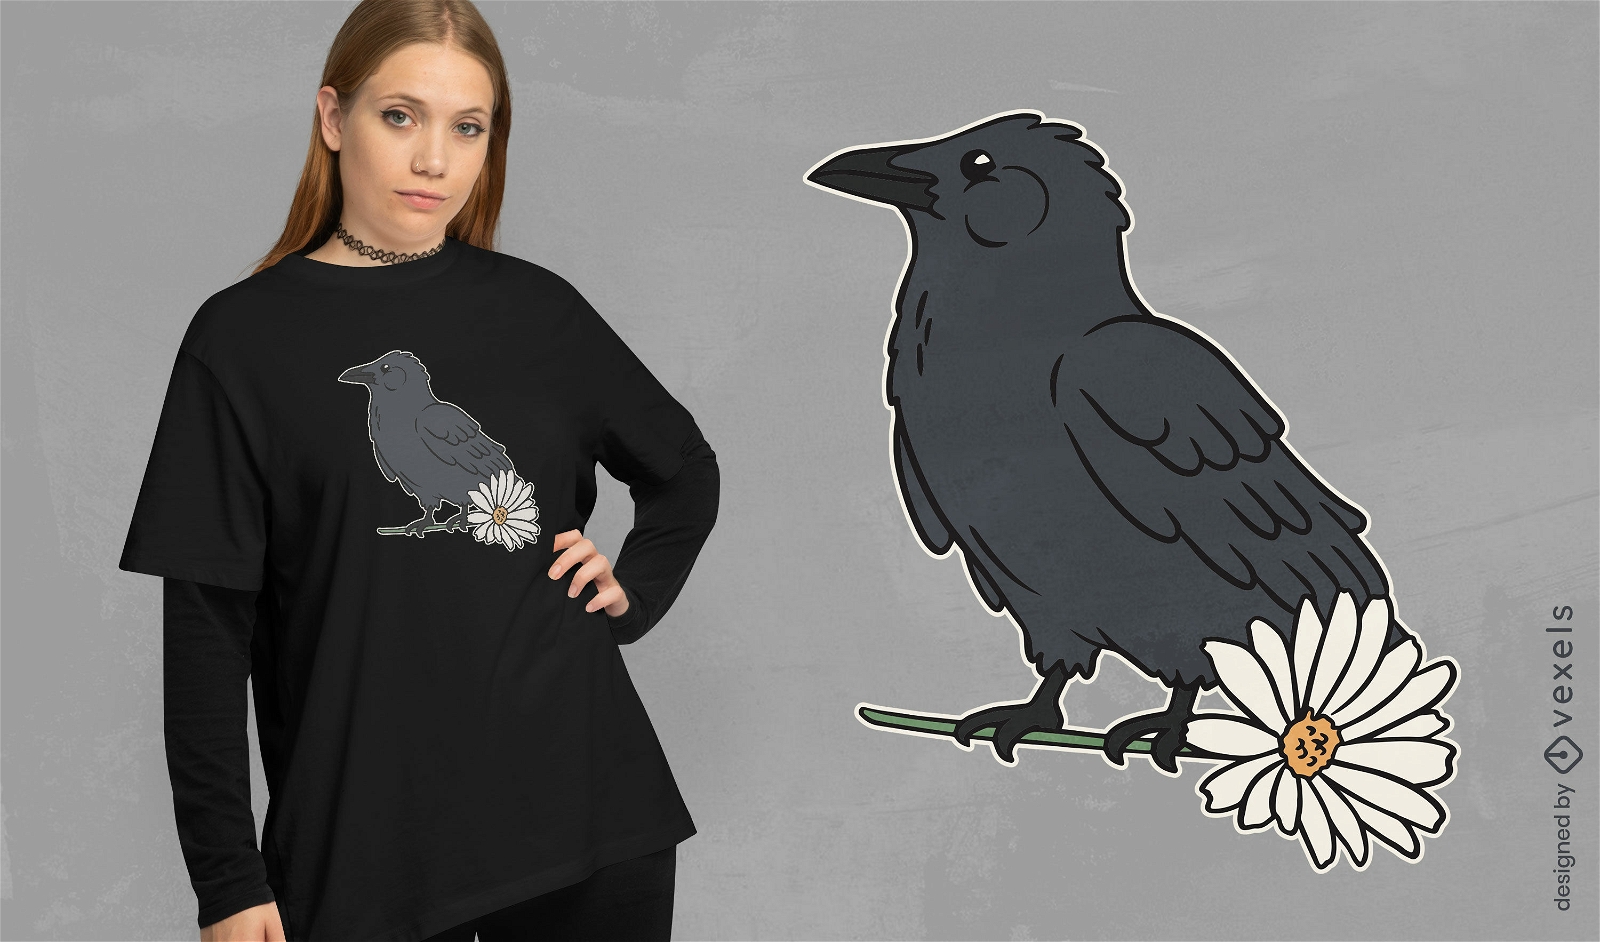 Design de camiseta com p?ssaro corvo e flor margarida